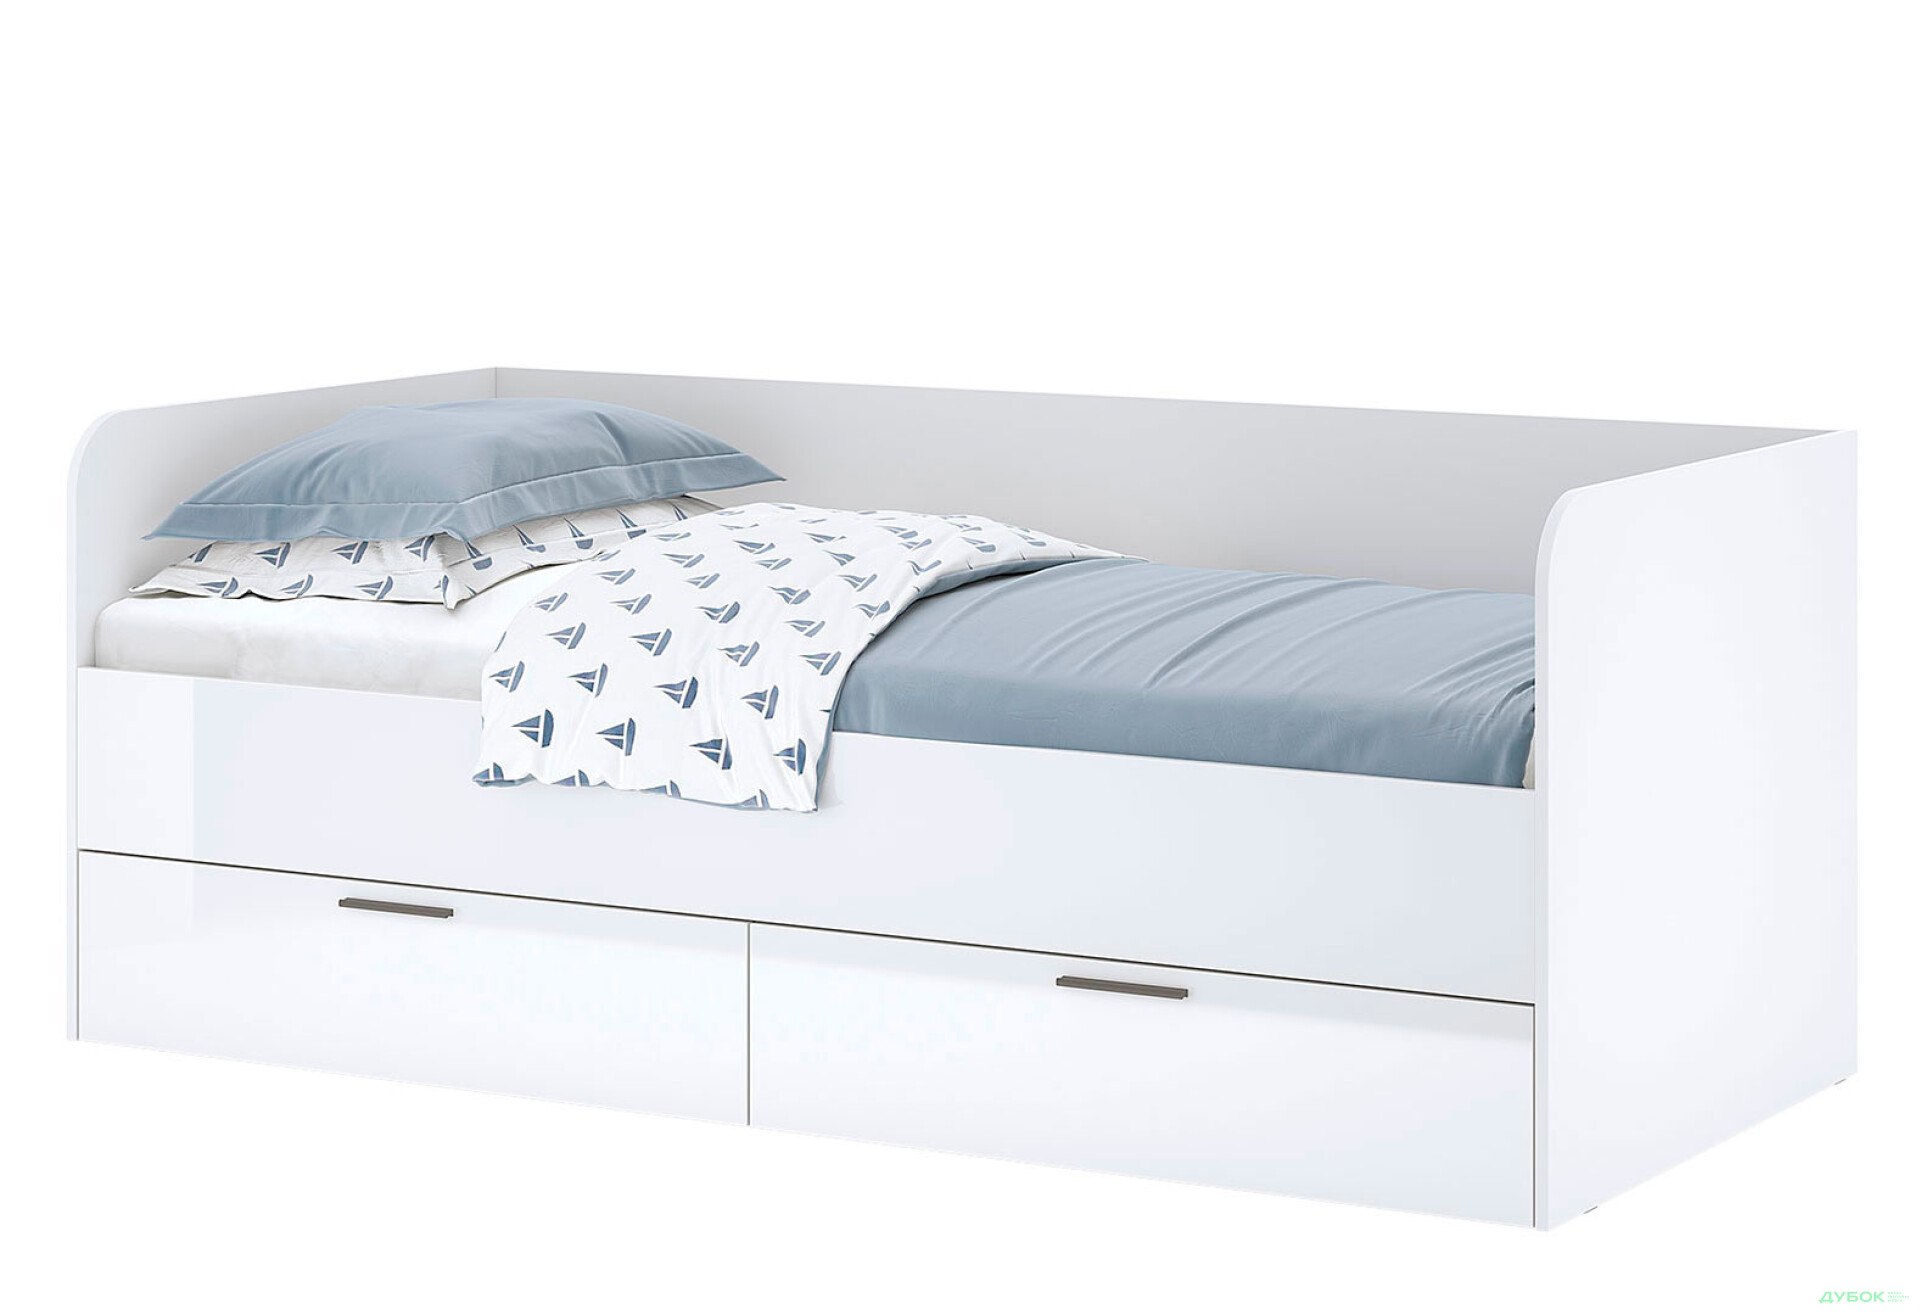 Фото 1 - Кровать МироМарк Хеппи 90х200 см с ящиками, белый глянец